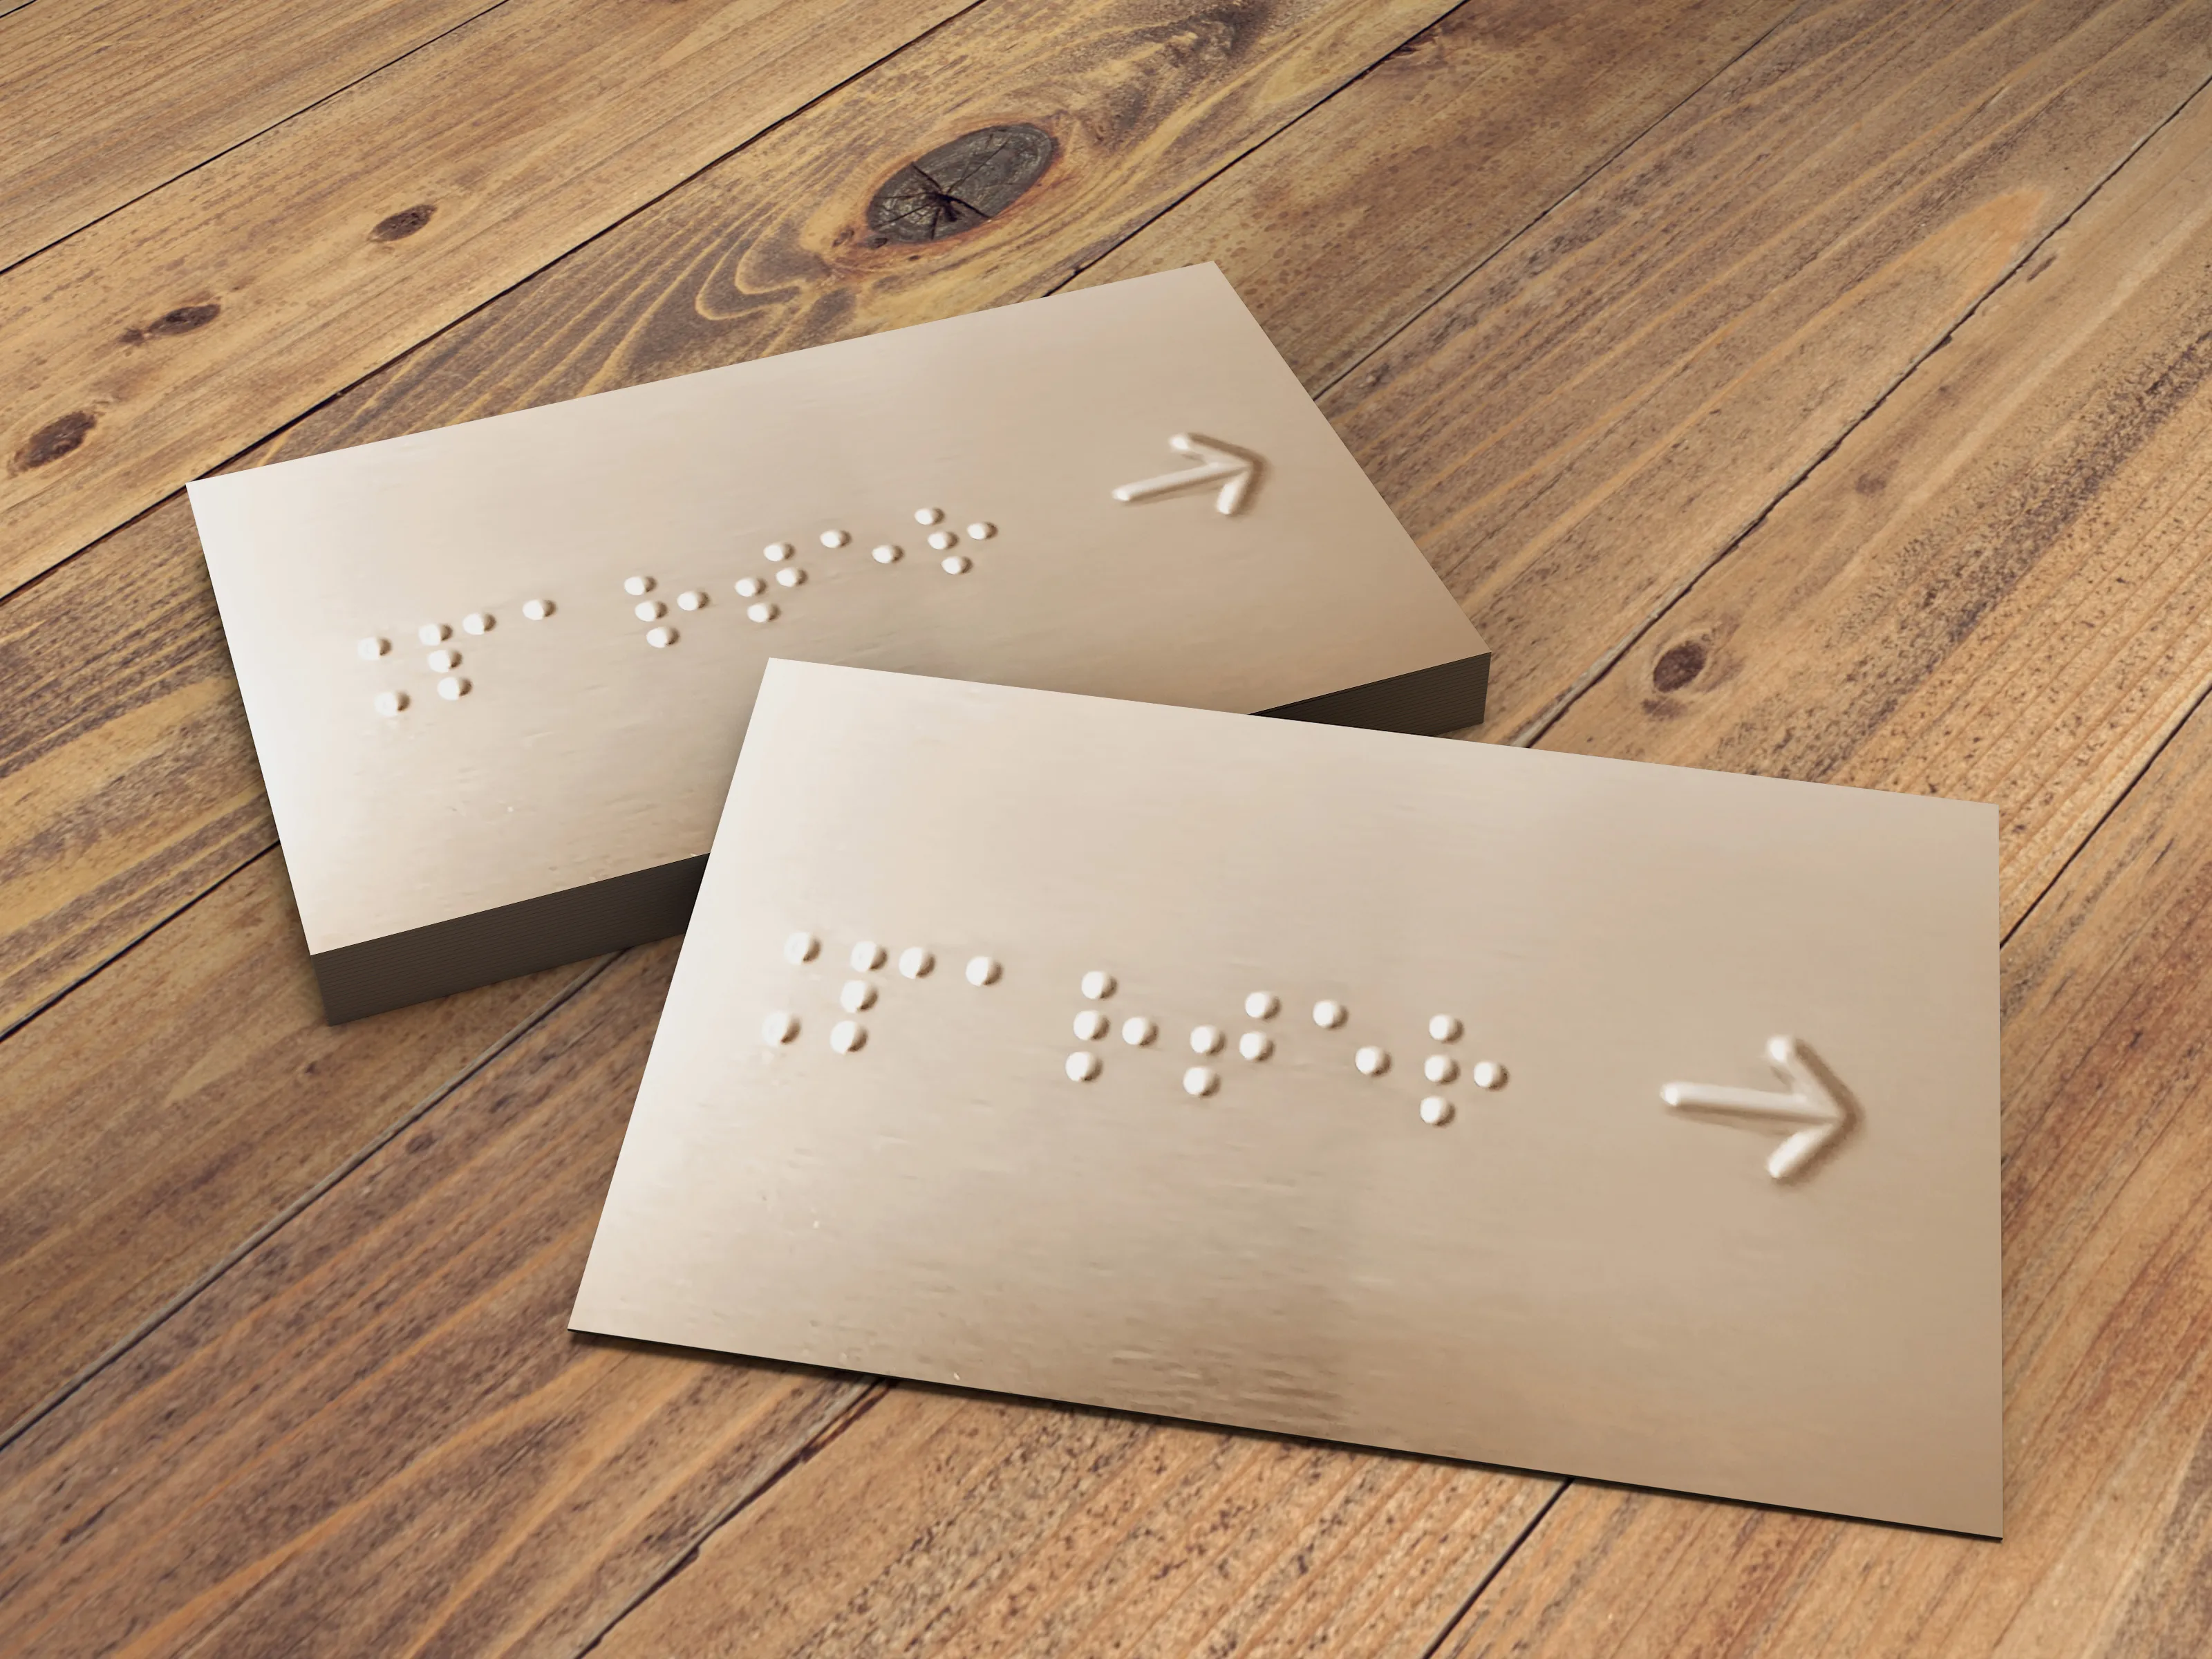 Tabliczka stalowa z tekstem w alfabecie Braille’a wraz z wytłoczoną strzałką w prawo.